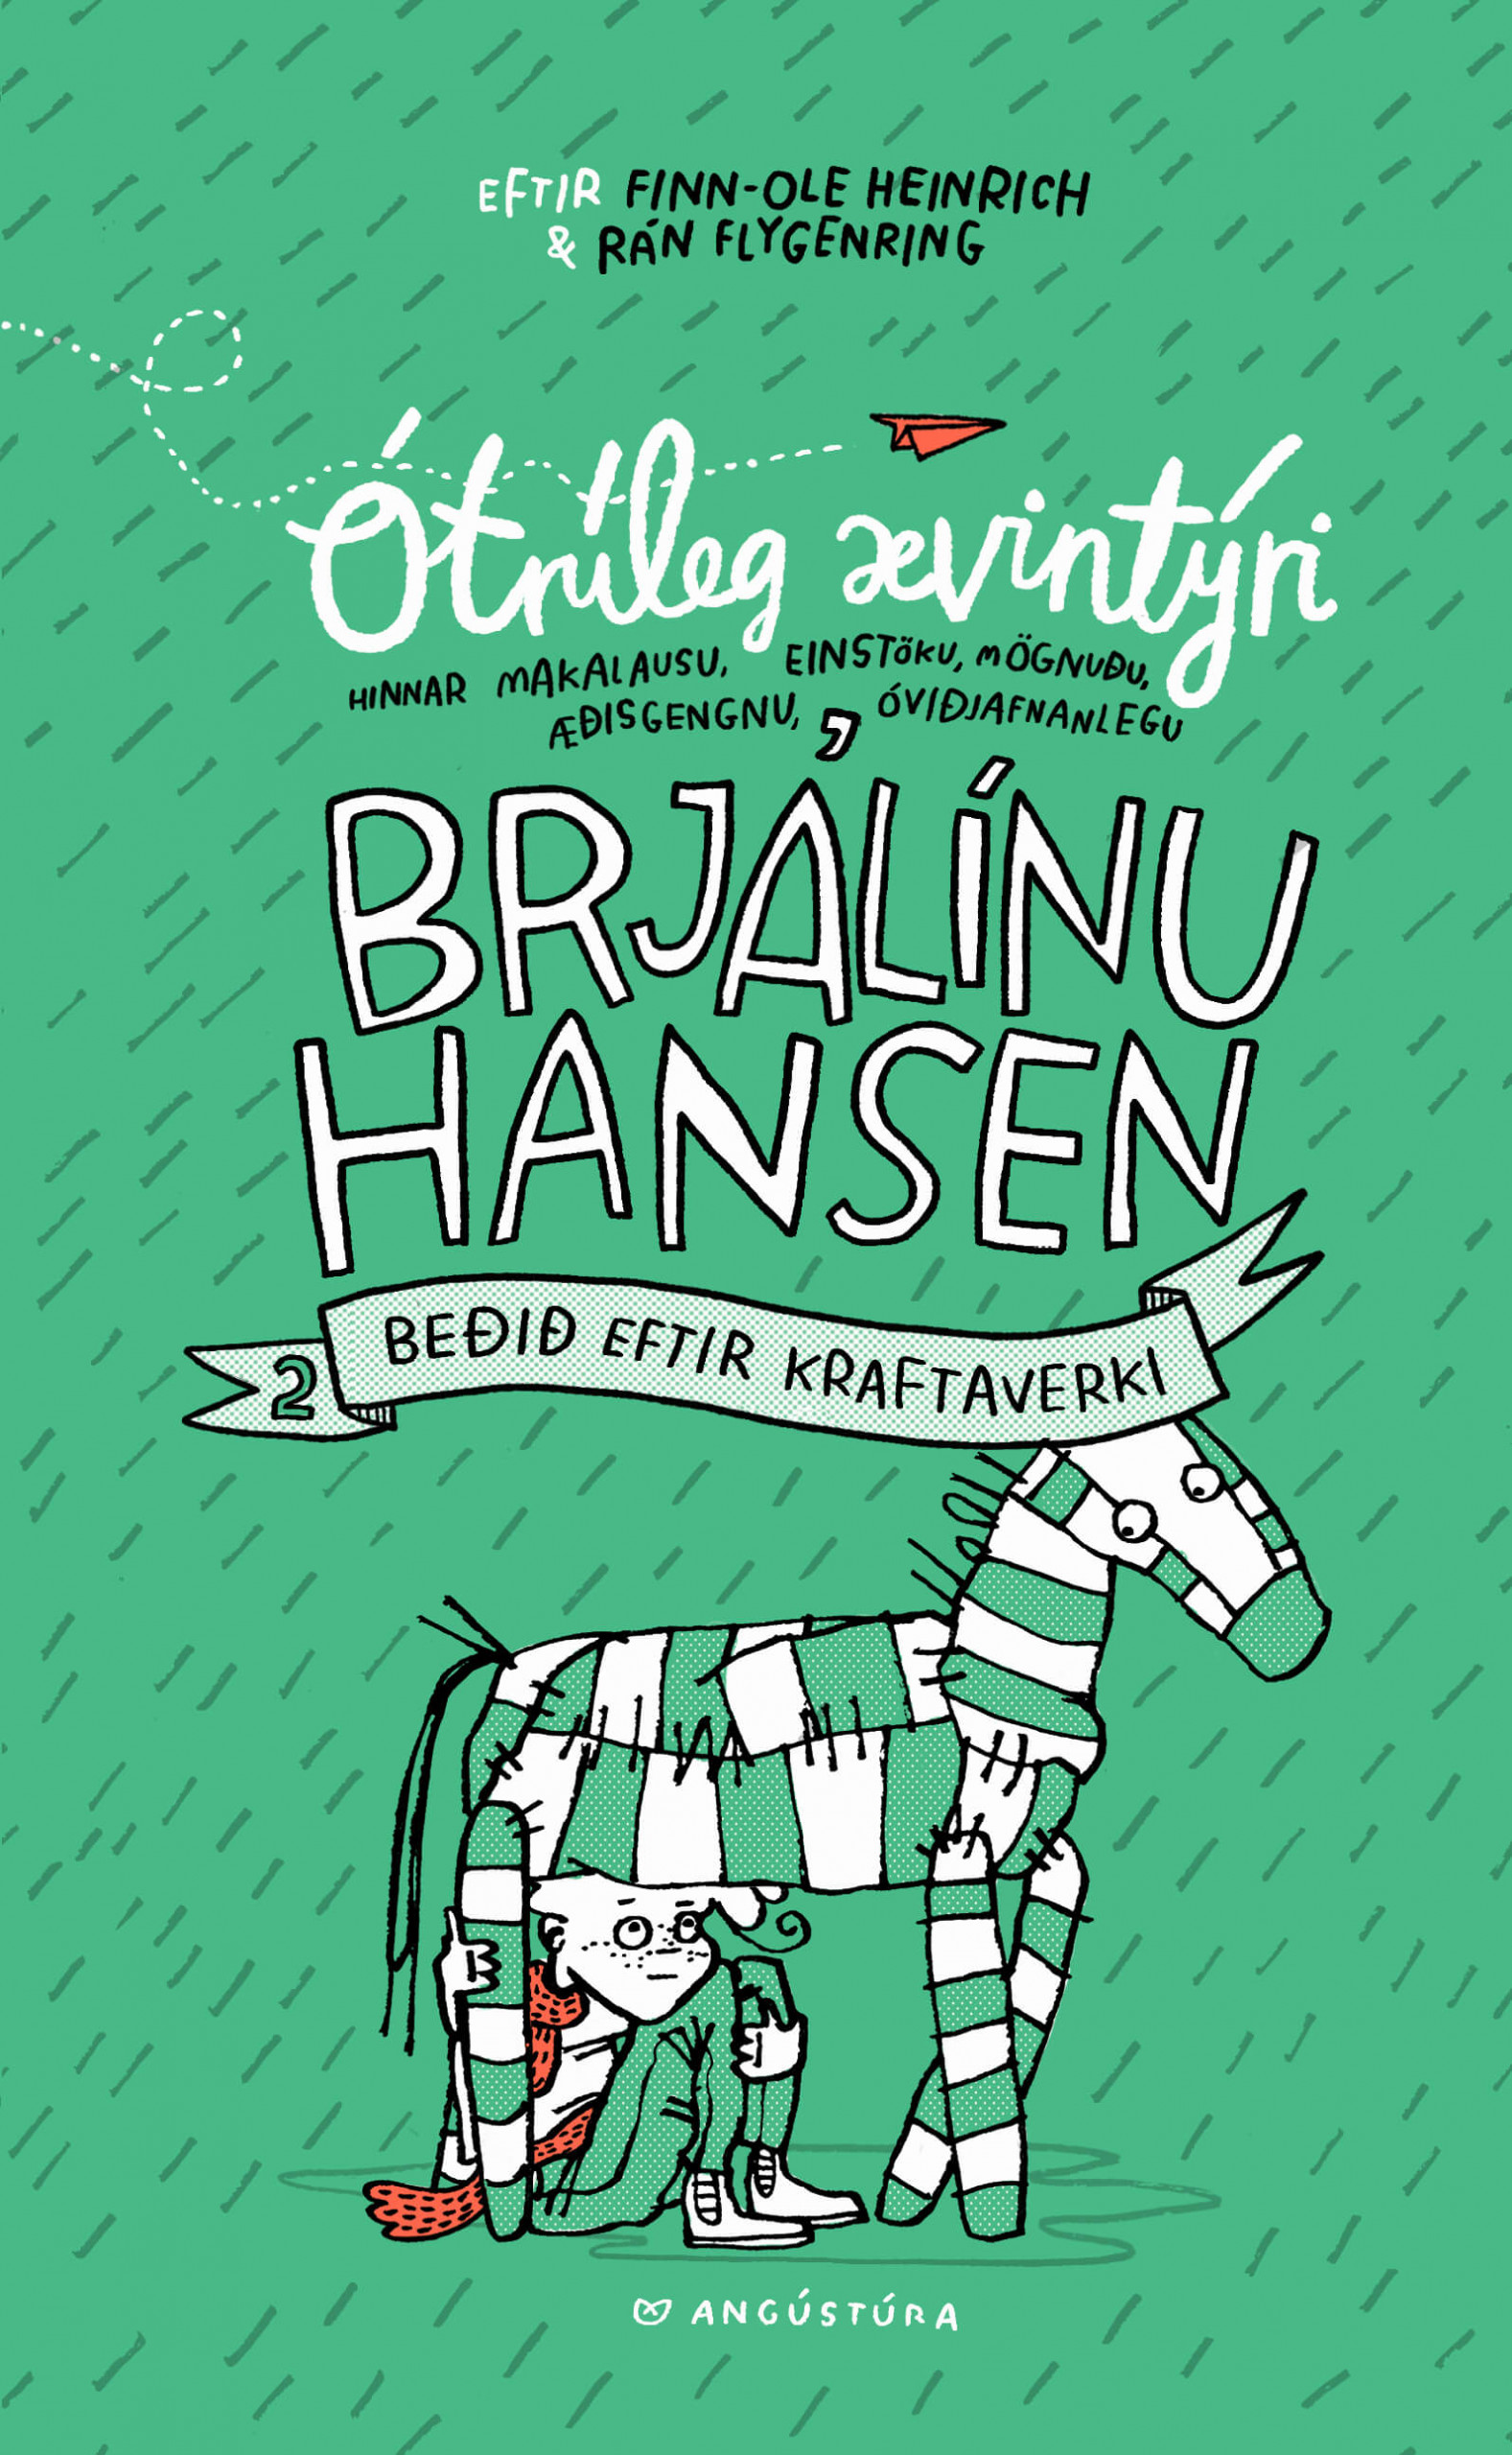 Brjálína Hansen bíður eftir kraftaverki.